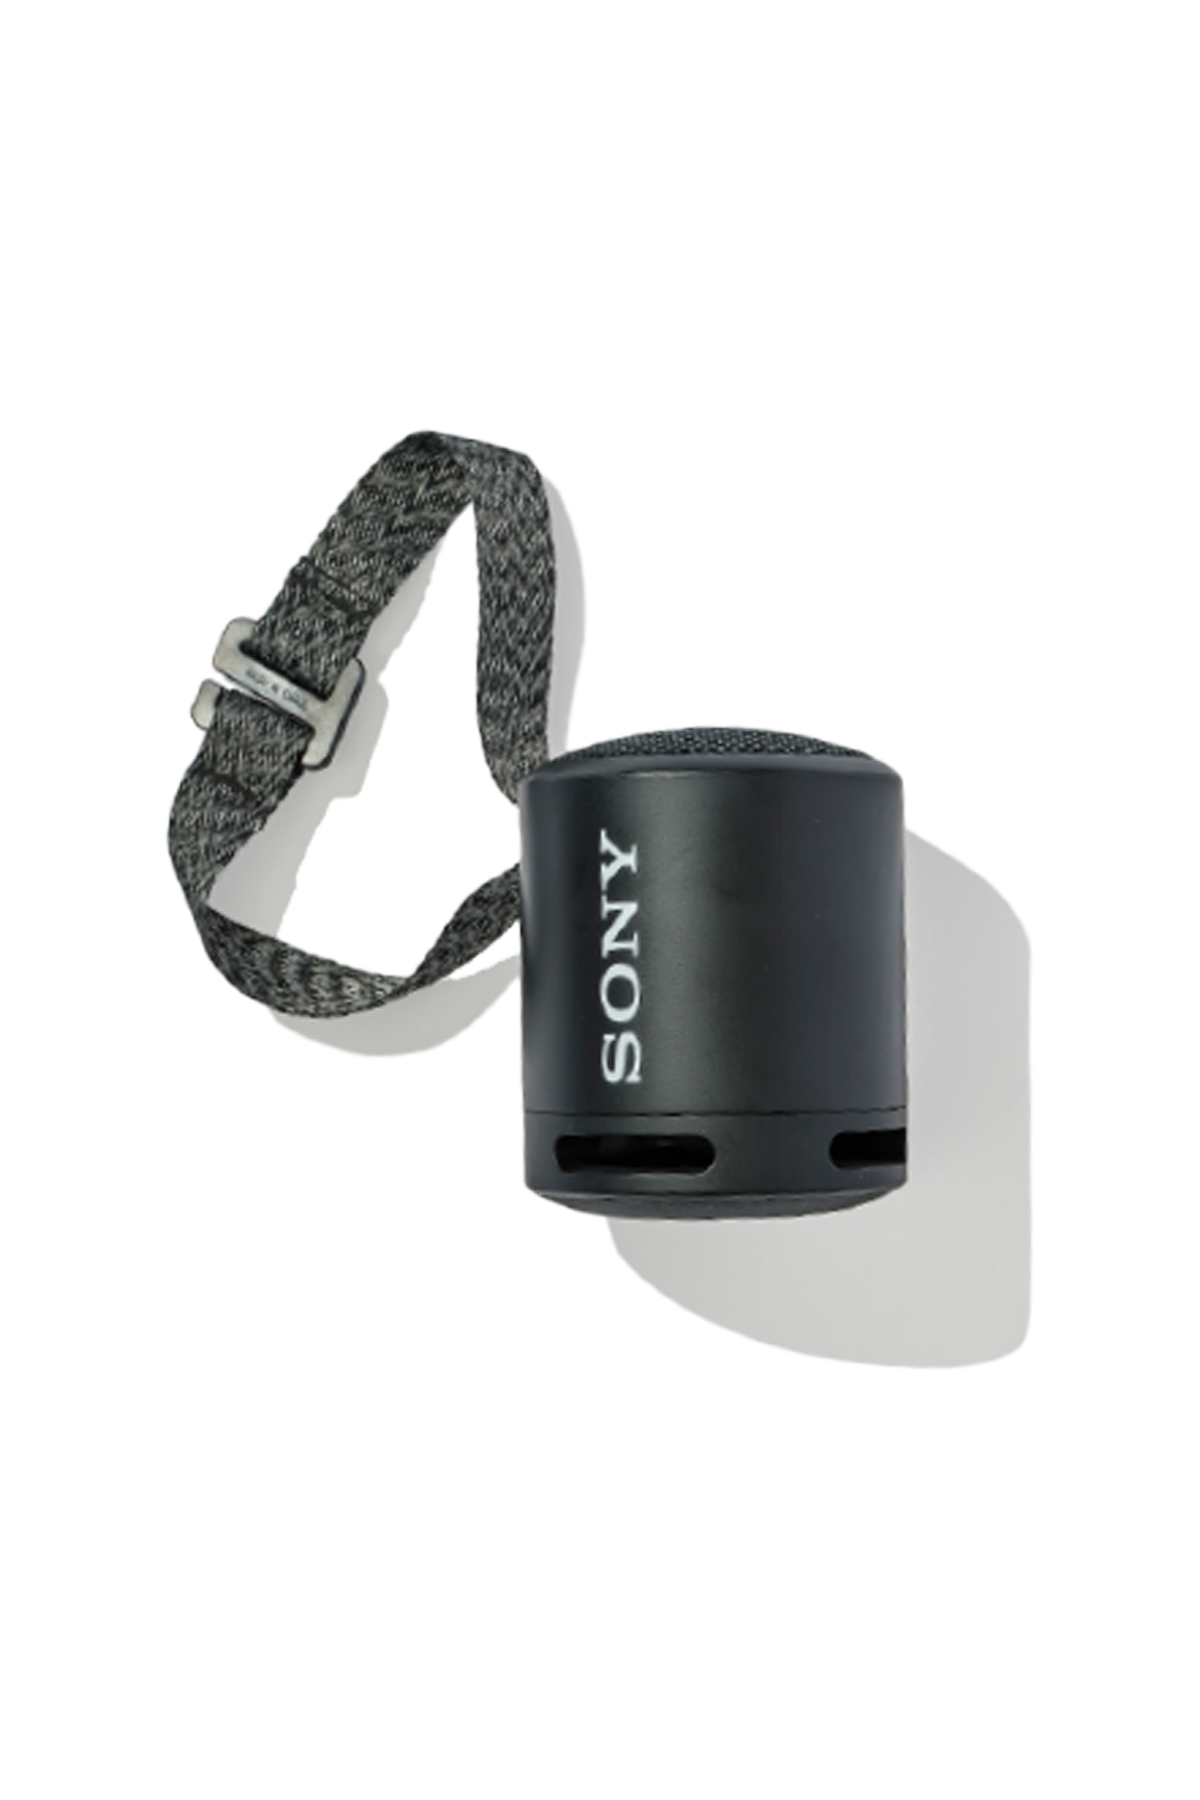 Sony Mini Wireless Speaker